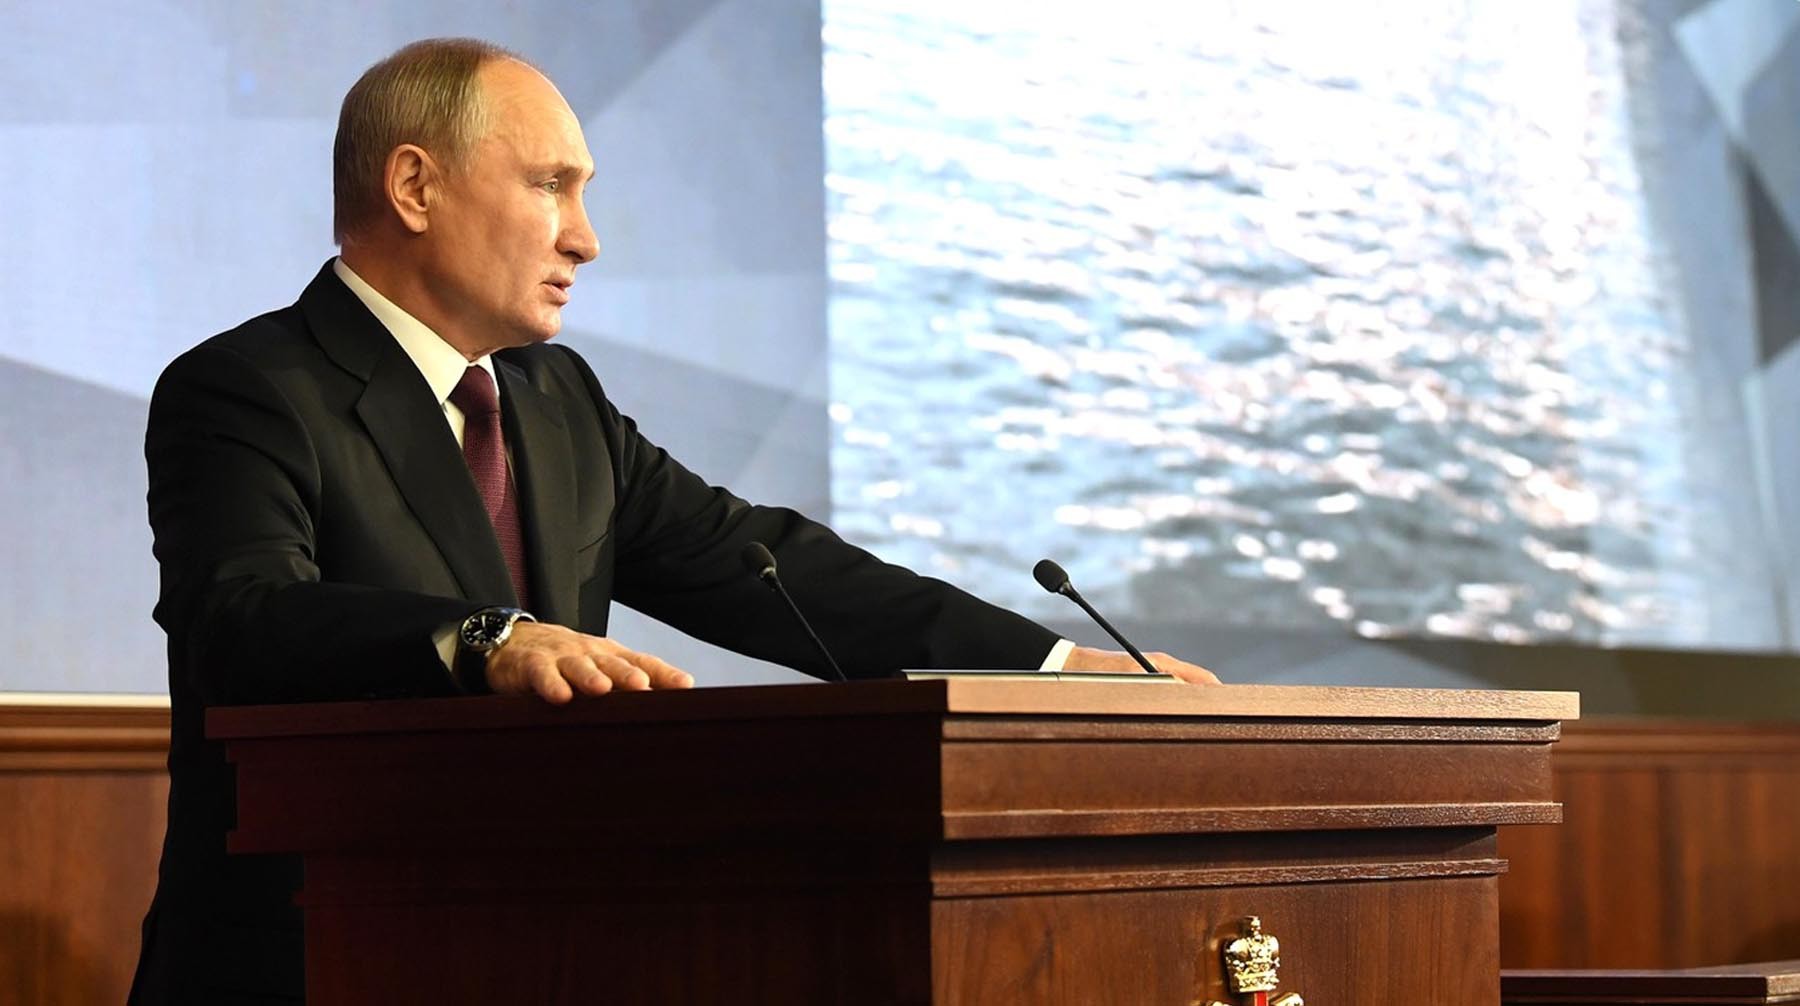 Dailystorm - С потребителями нельзя хулиганить: Путин высказался о ценах на топливо